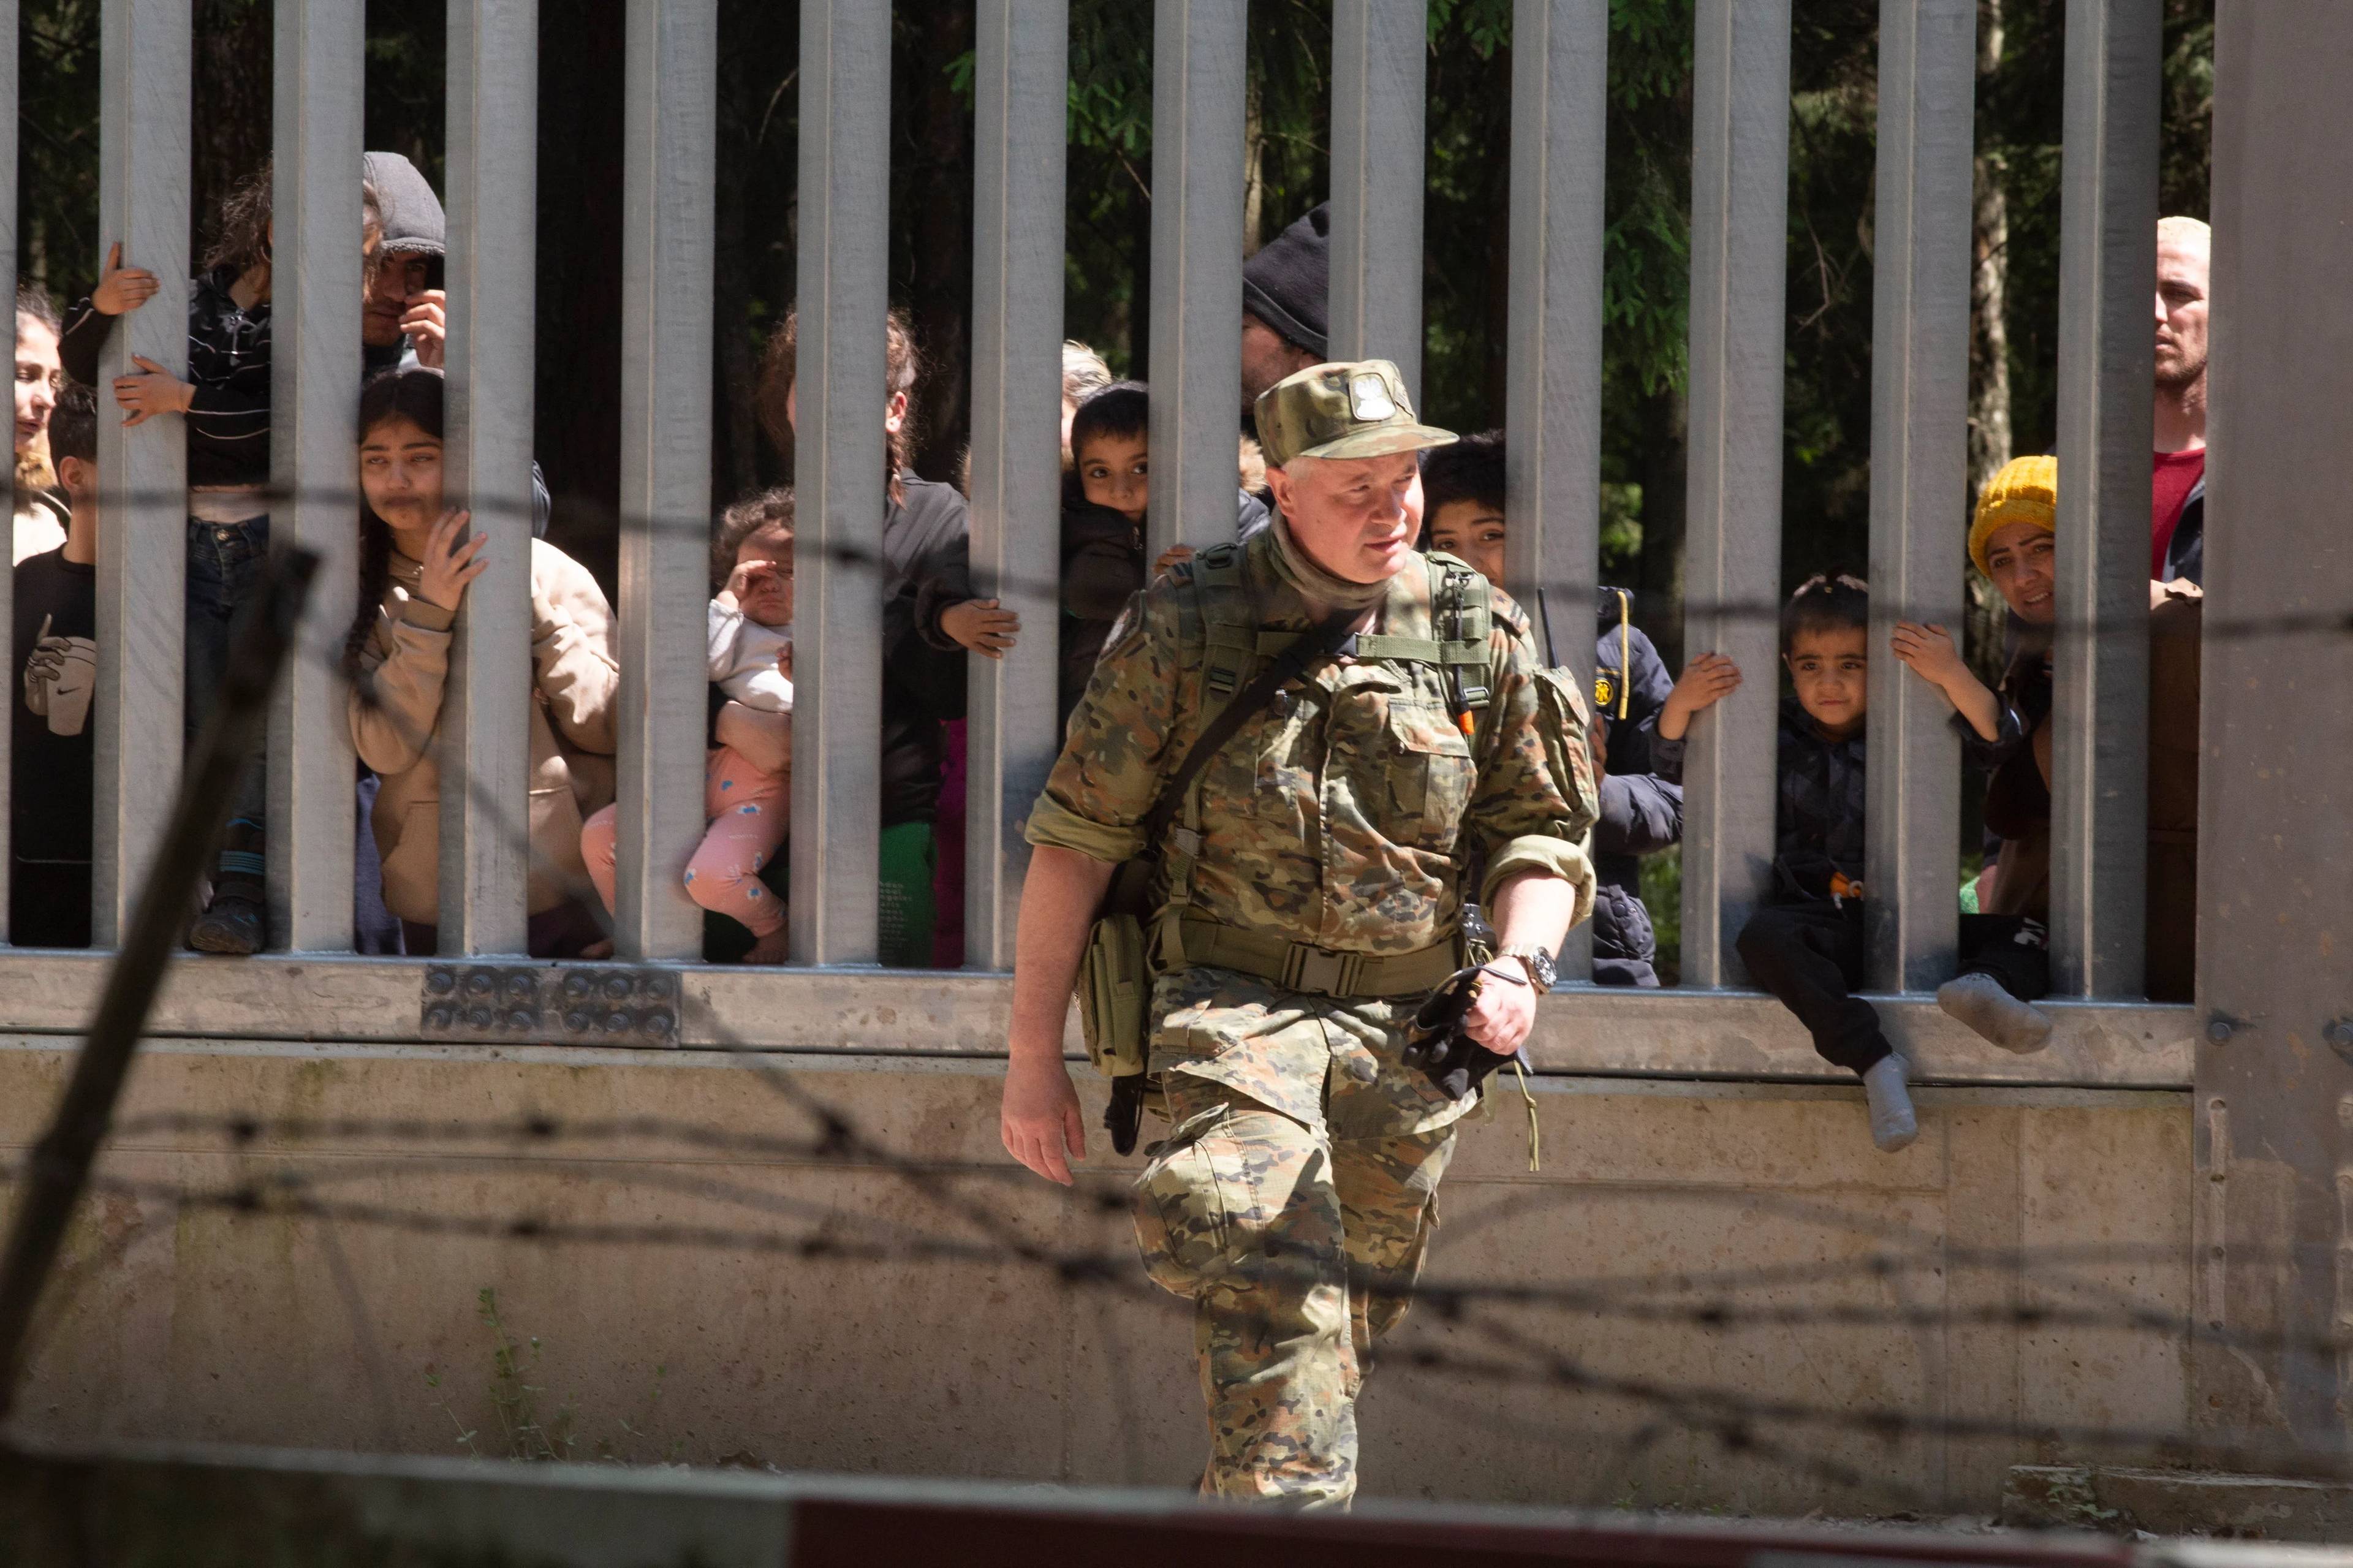 Mur na granicy, zza muru wyglądaja twarze uchodźców i migrantów